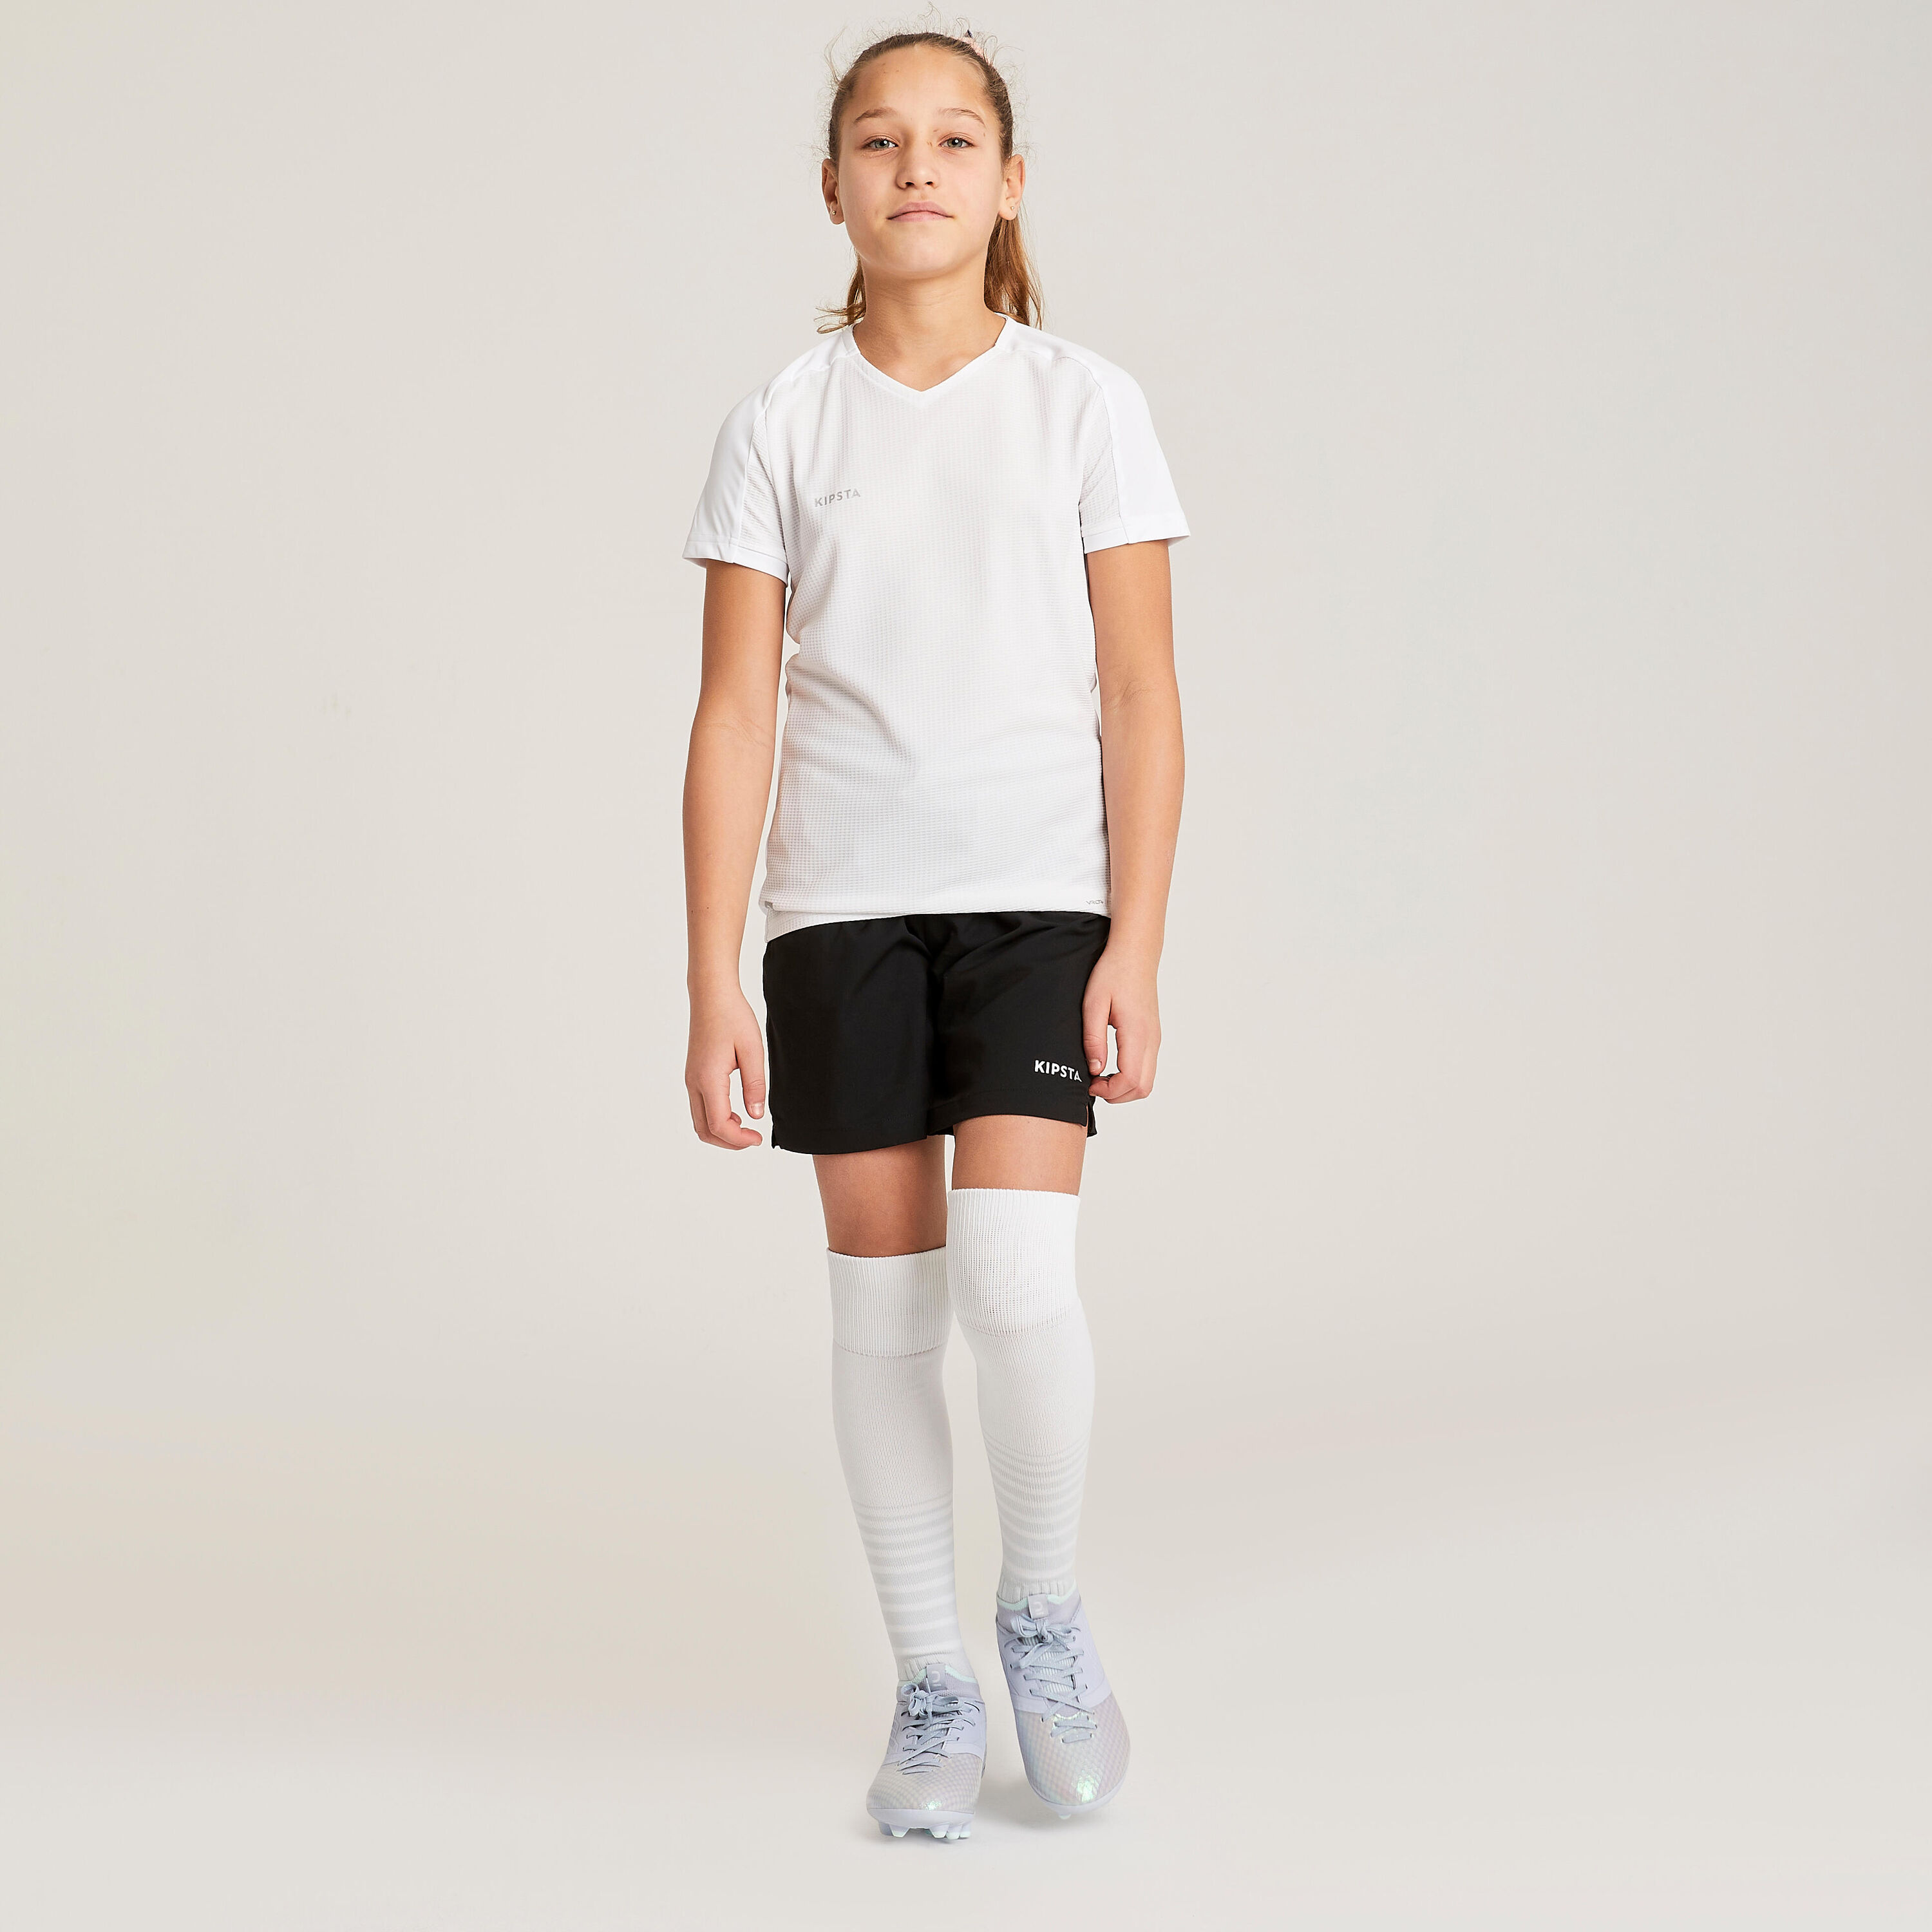 KIPSTA Girls' Football Shorts Viralto - Black